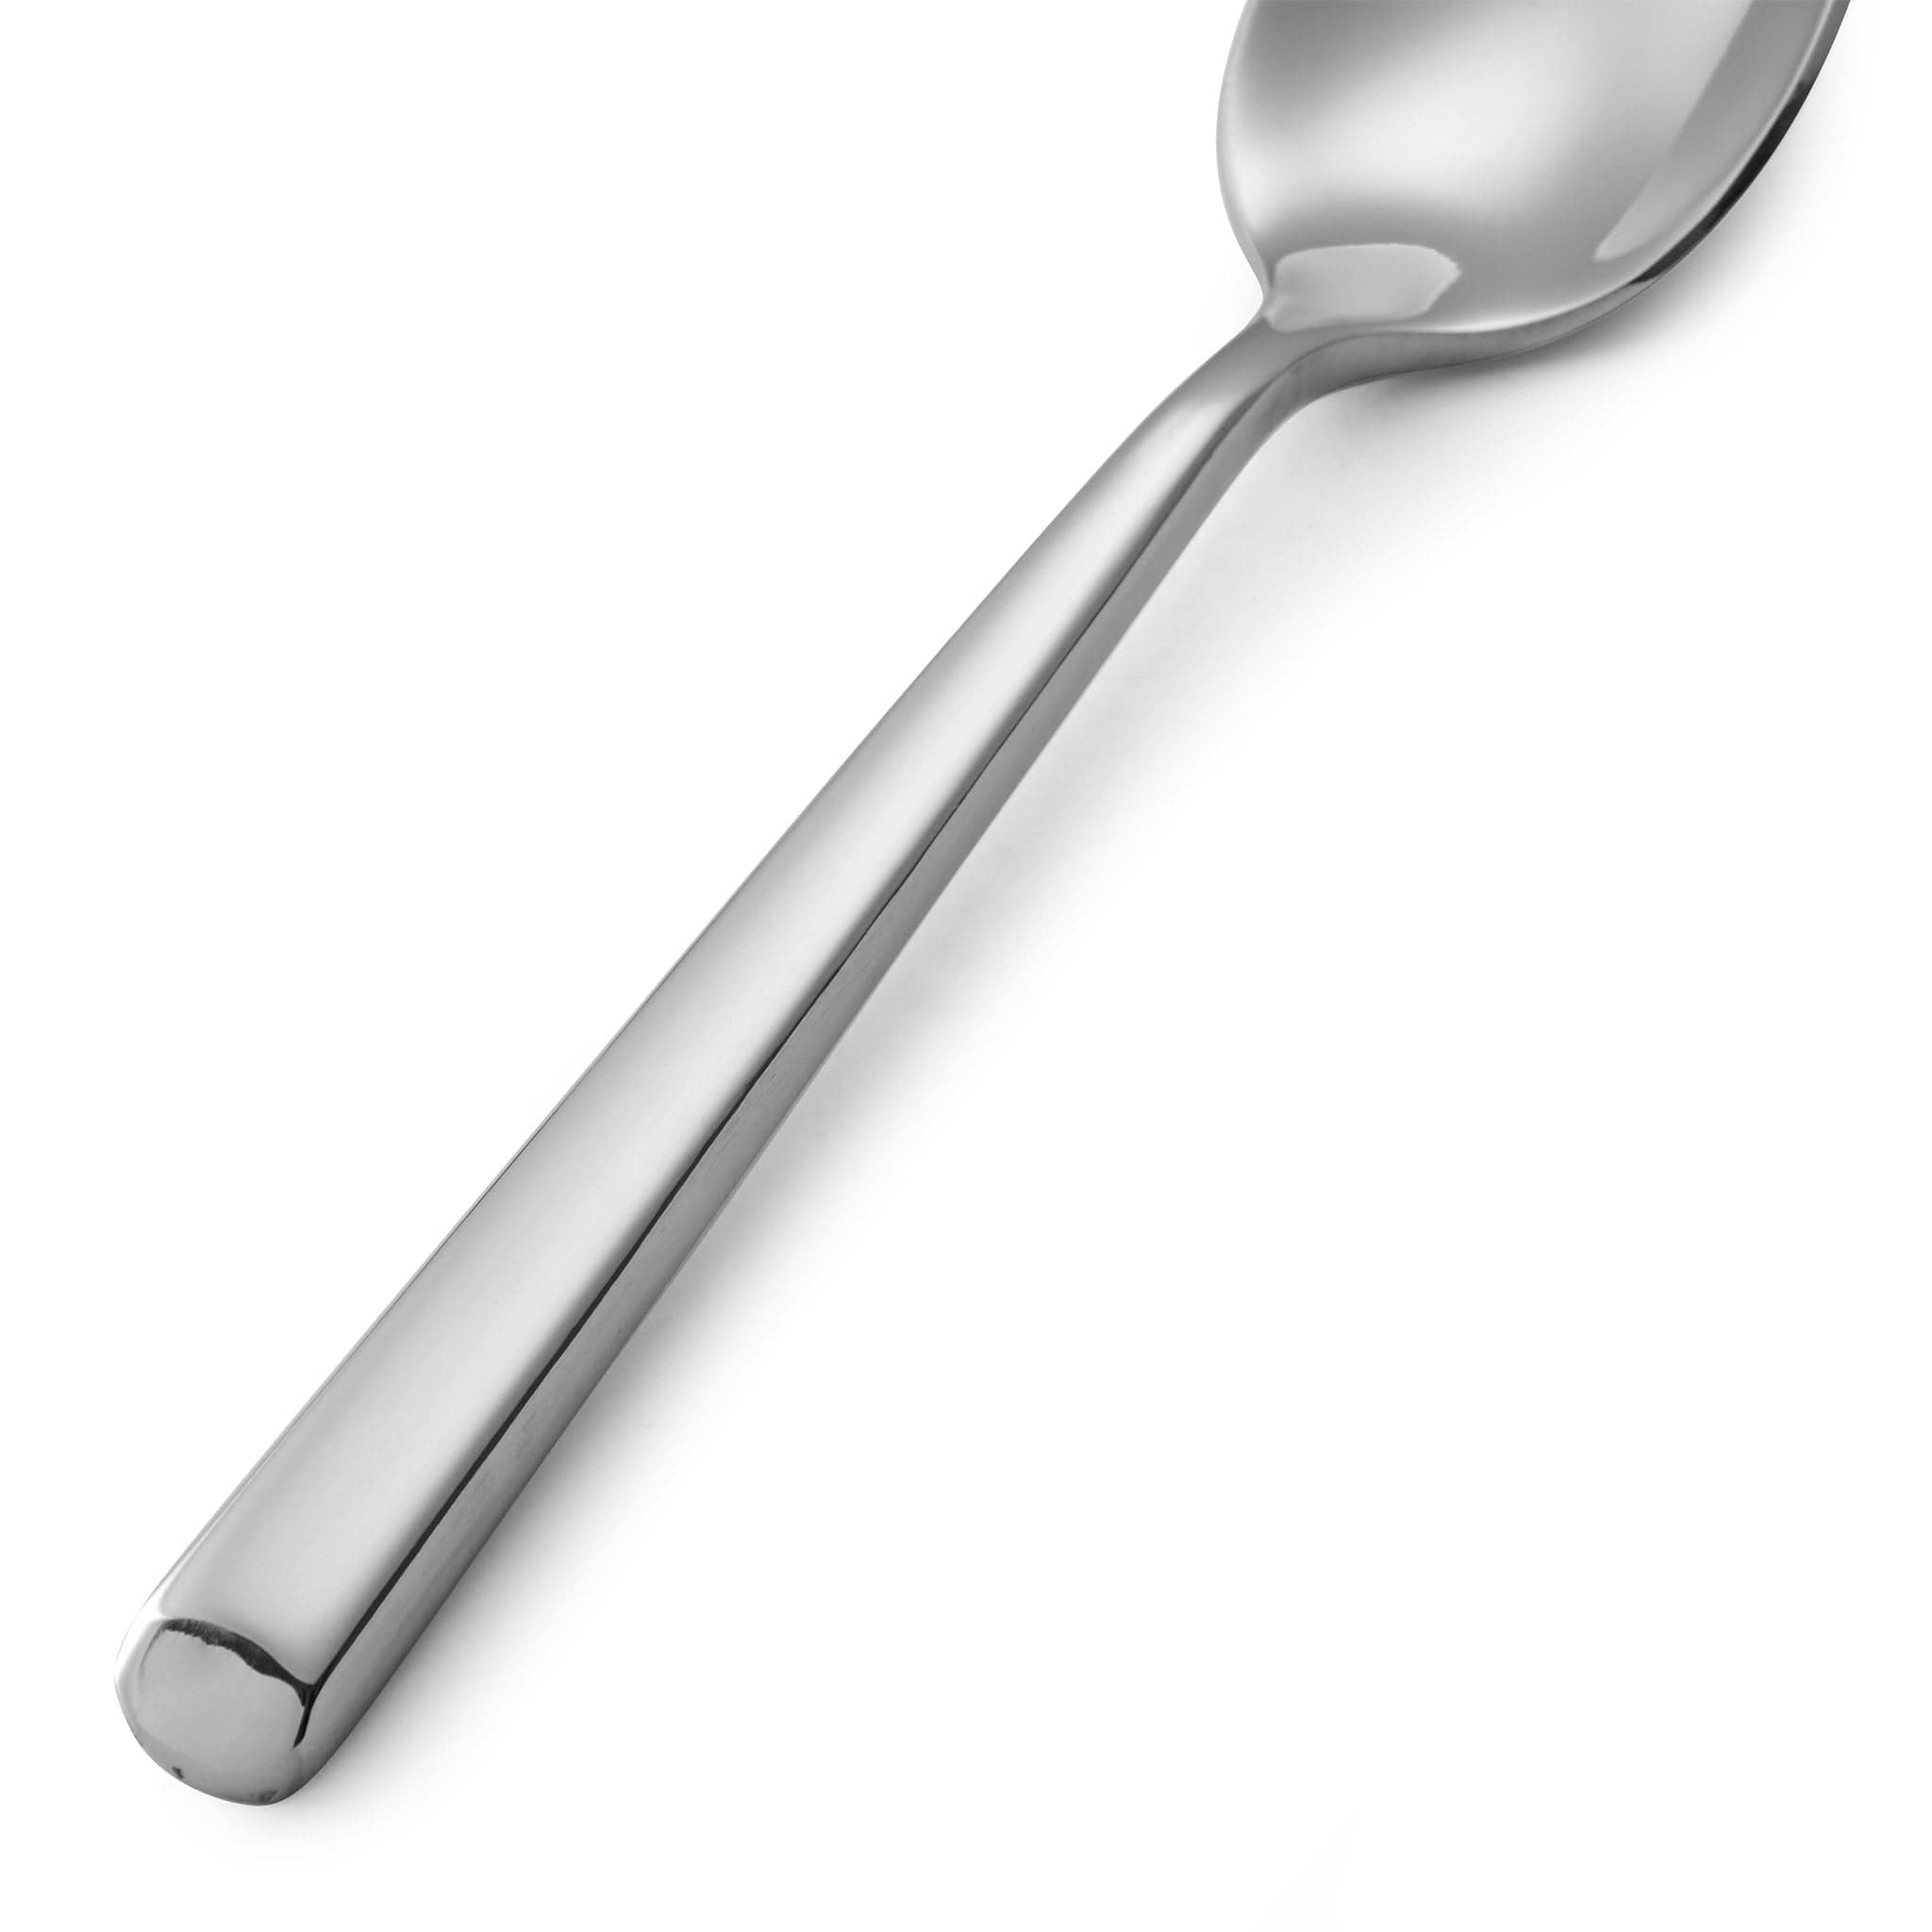 Firenze 18/10 Coffee Spoon 6.7" Stainless Steel